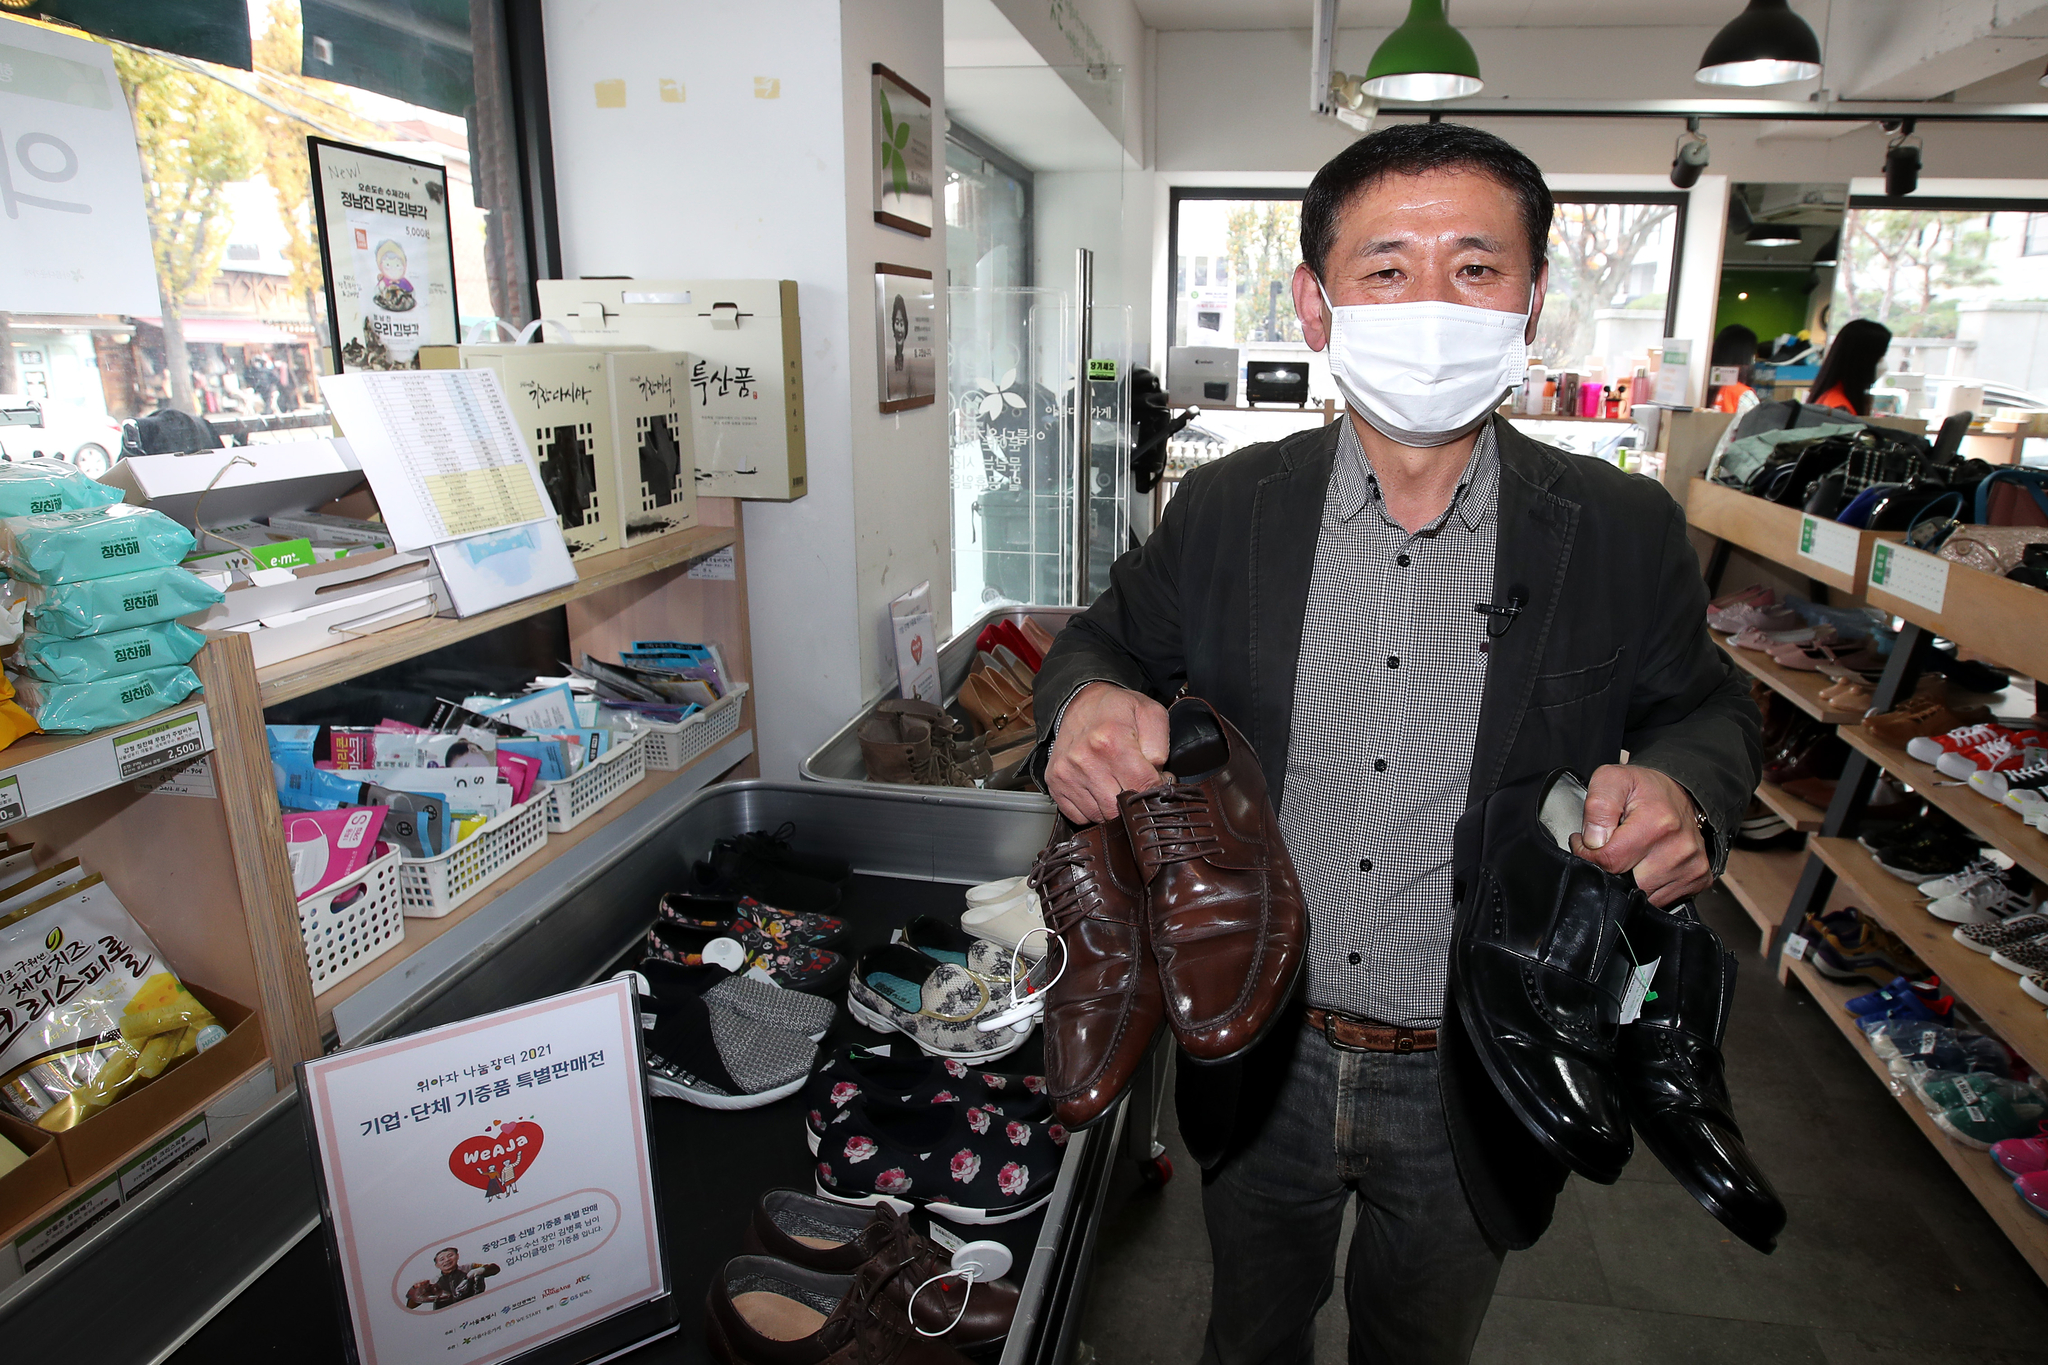 13일, '위아자 기증품 특별판매전'이 열린 아름다운가게 안국점에서 김병록 구두장인이 본인이 수선한 구두를 들어보이고 있다. 장진영 기자